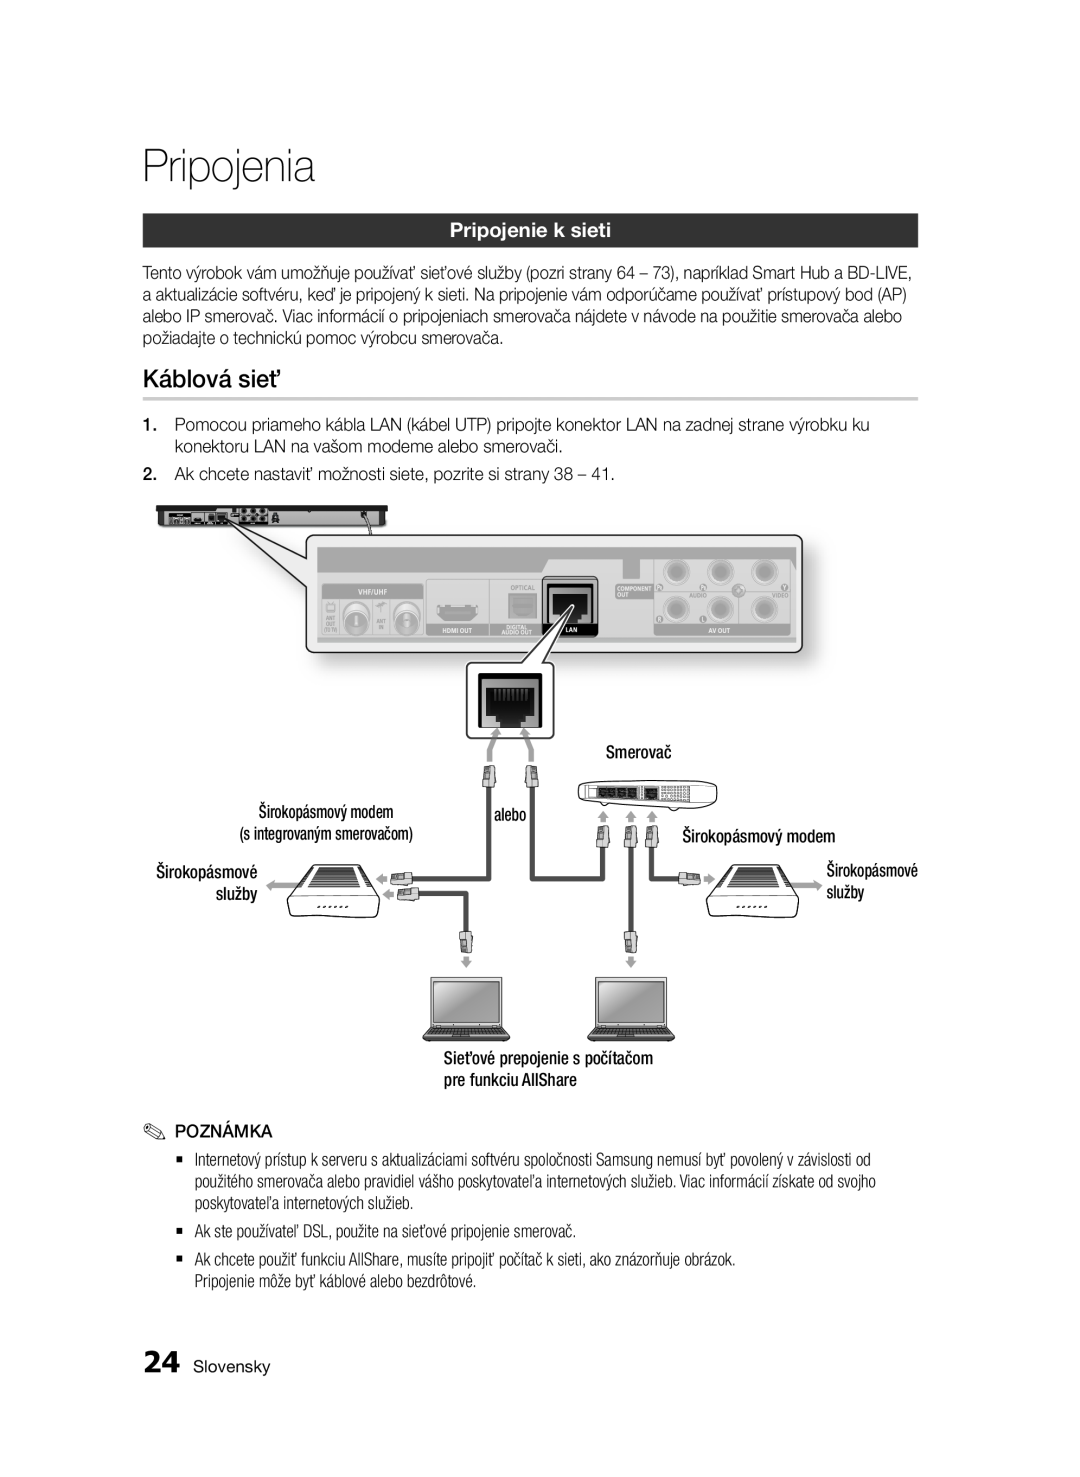 Samsung BD-E6300/EN manual Káblová sieť, Pripojenie k sieti, Pripojenia 